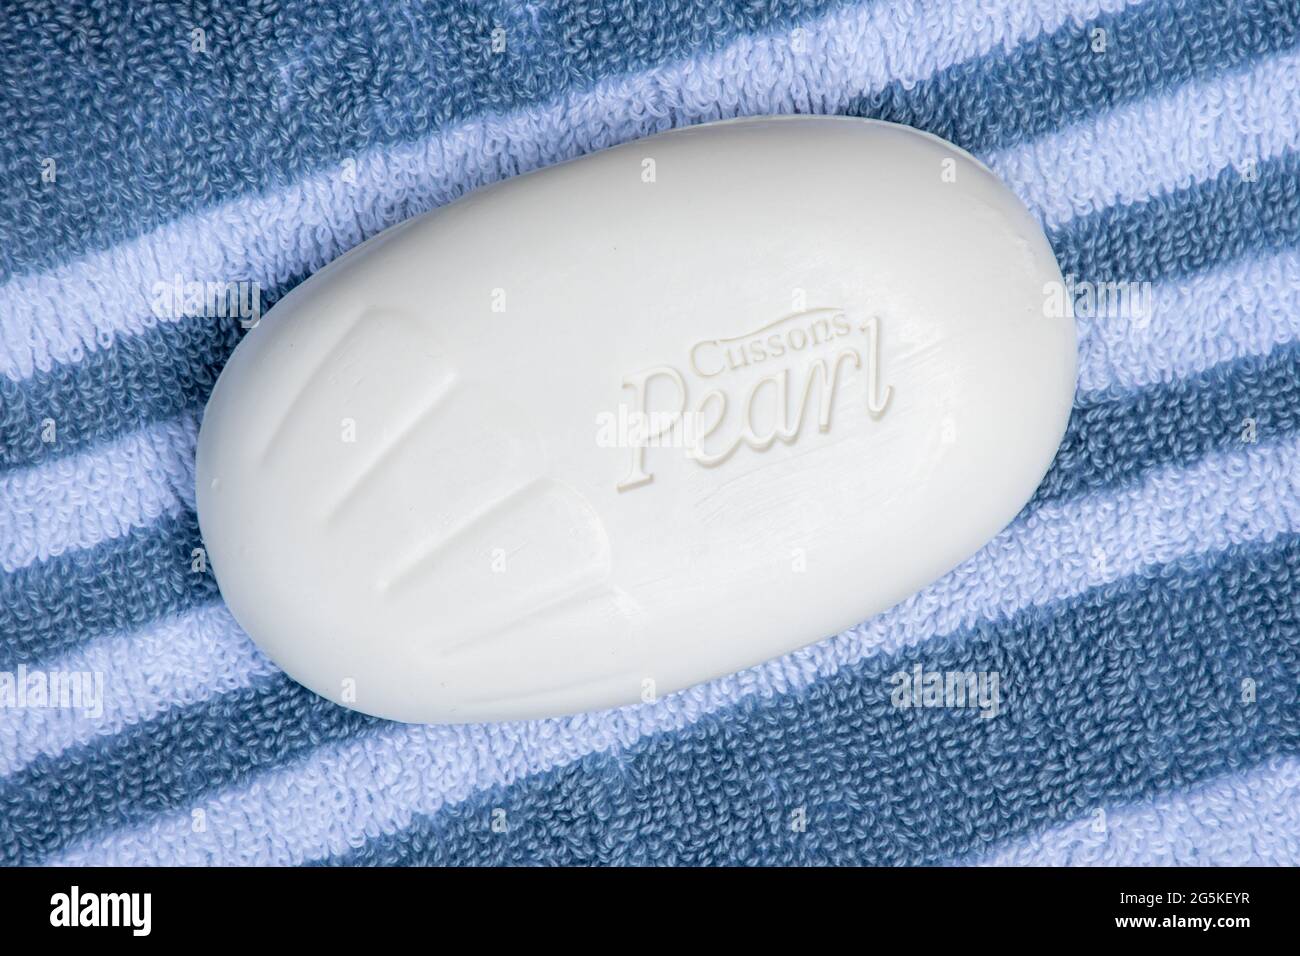 Ein Stück Cussons Pearl cremig-weiße Seife auf einem Badetuch Stockfoto